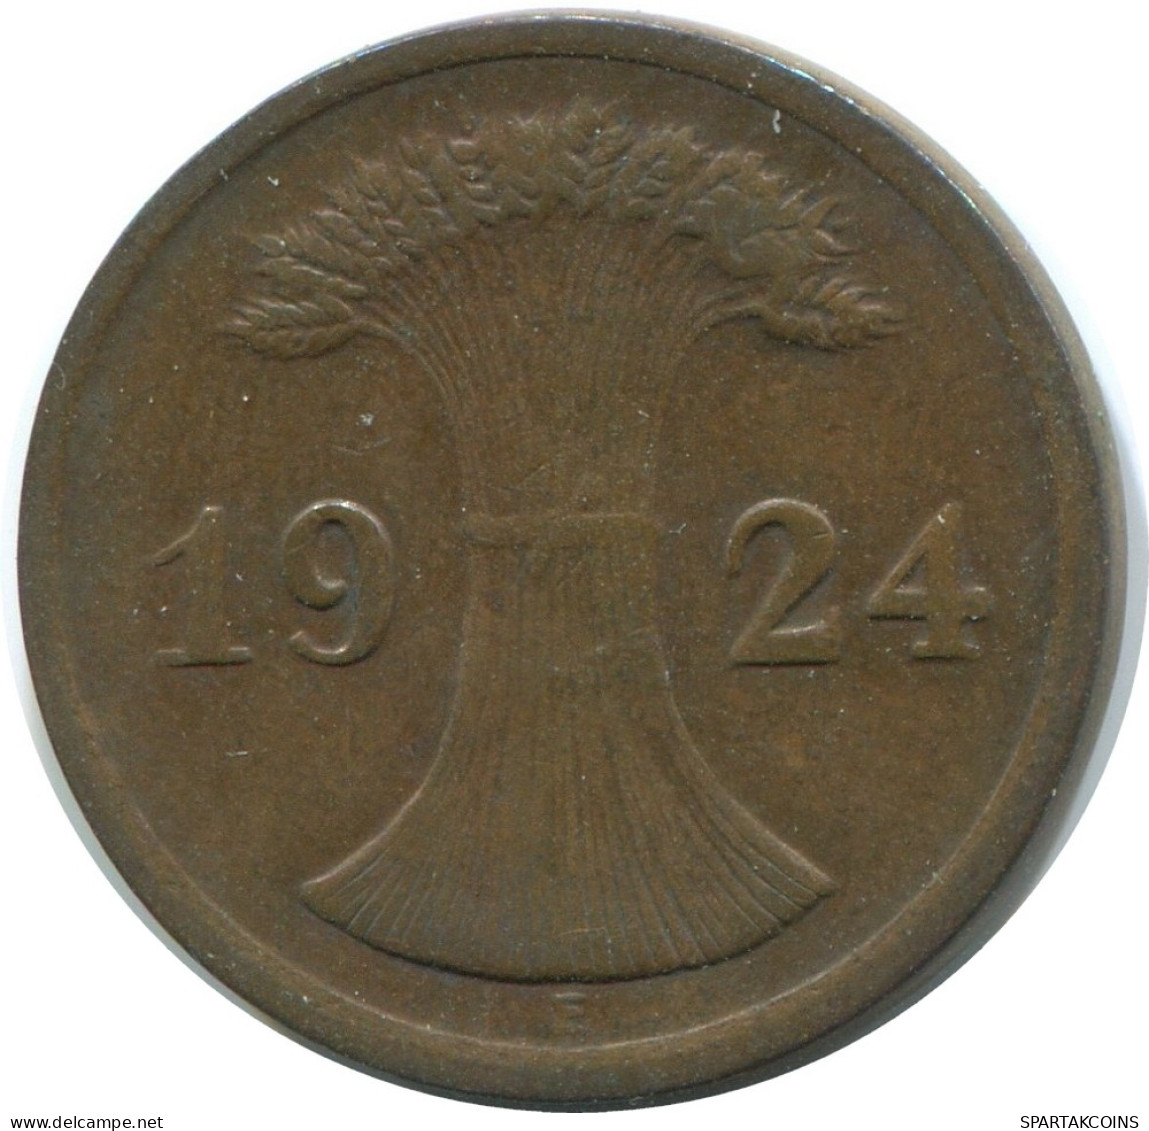 2 RENTENPFENNIG 1924 E ALLEMAGNE Pièce GERMANY #AE274.F - 2 Renten- & 2 Reichspfennig